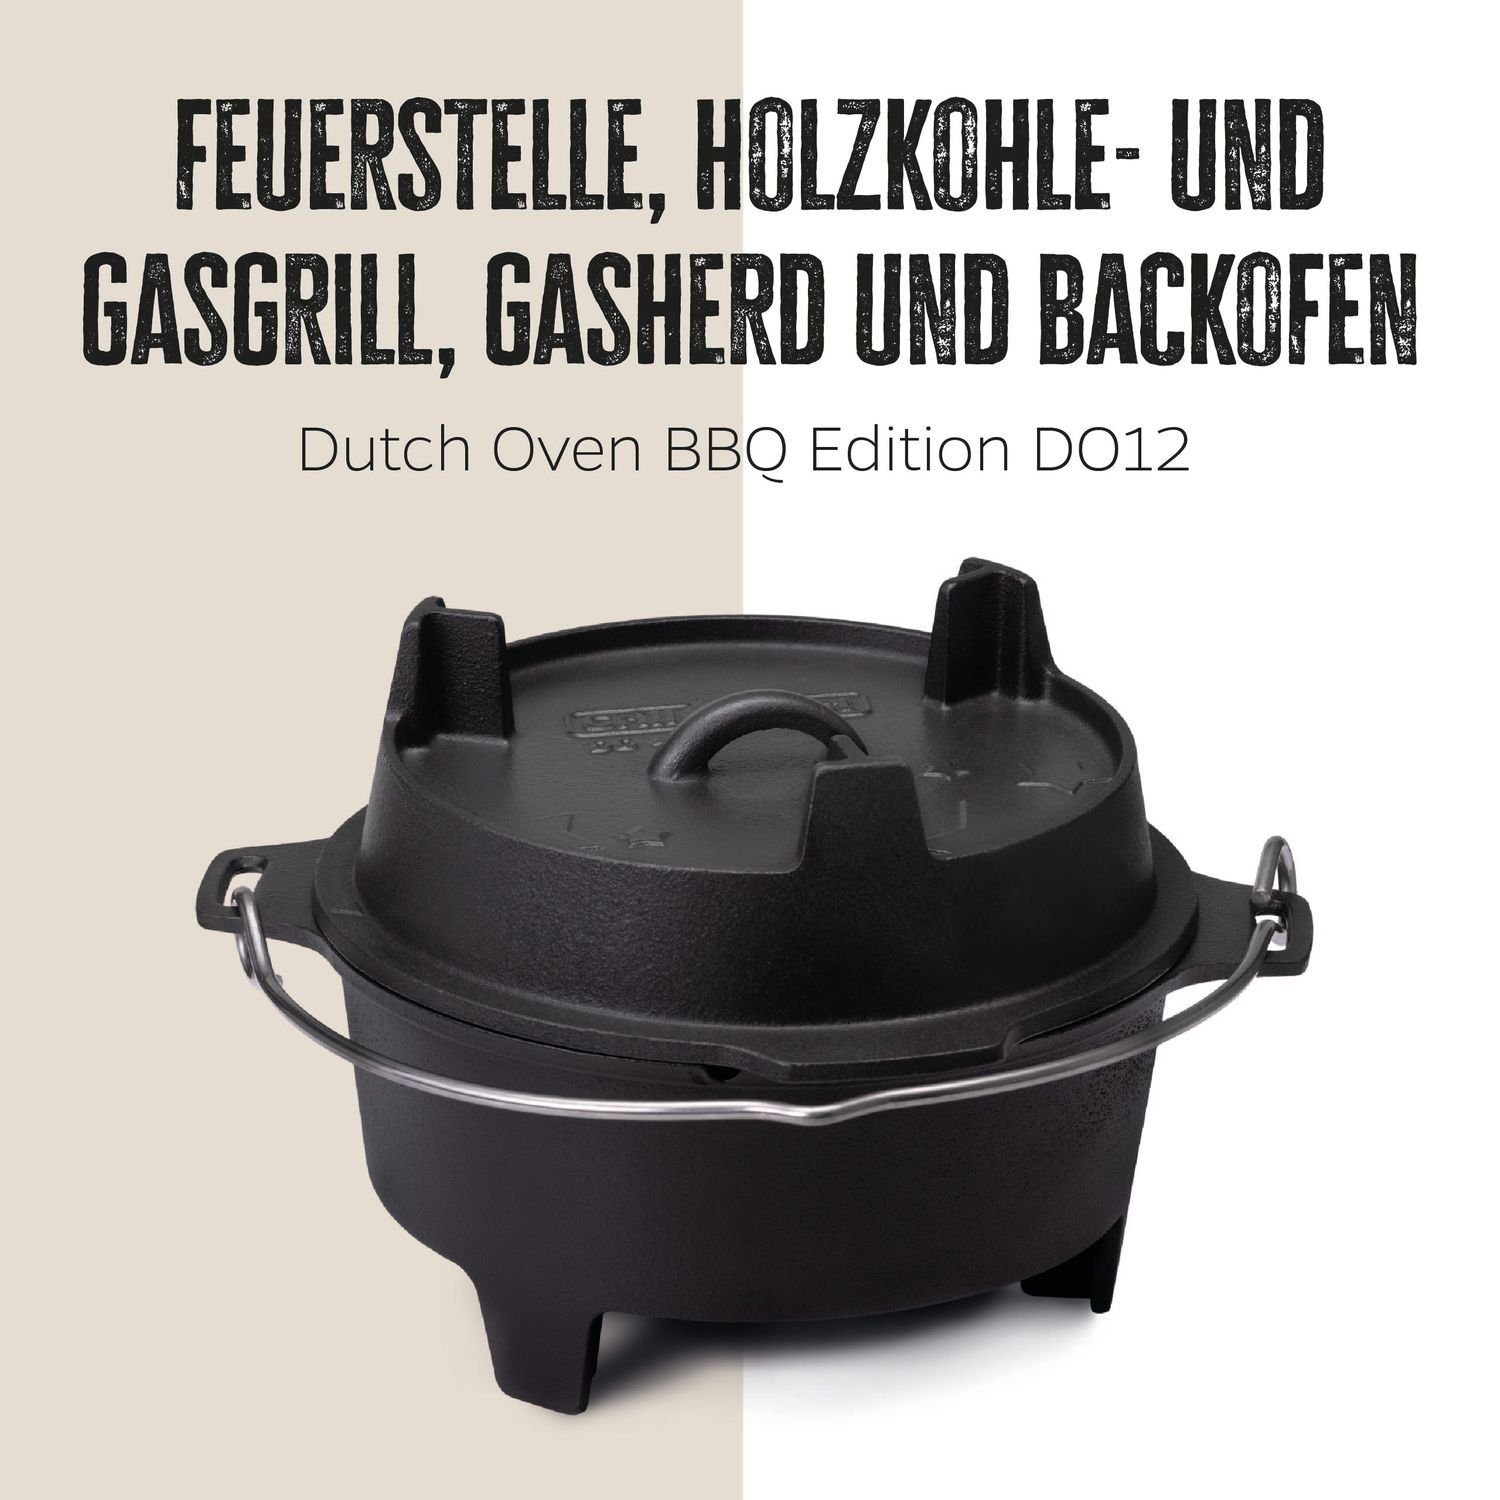 Oven BBQ Dutch Grillfürst Bratentopf DO12 Grillfürst Edition